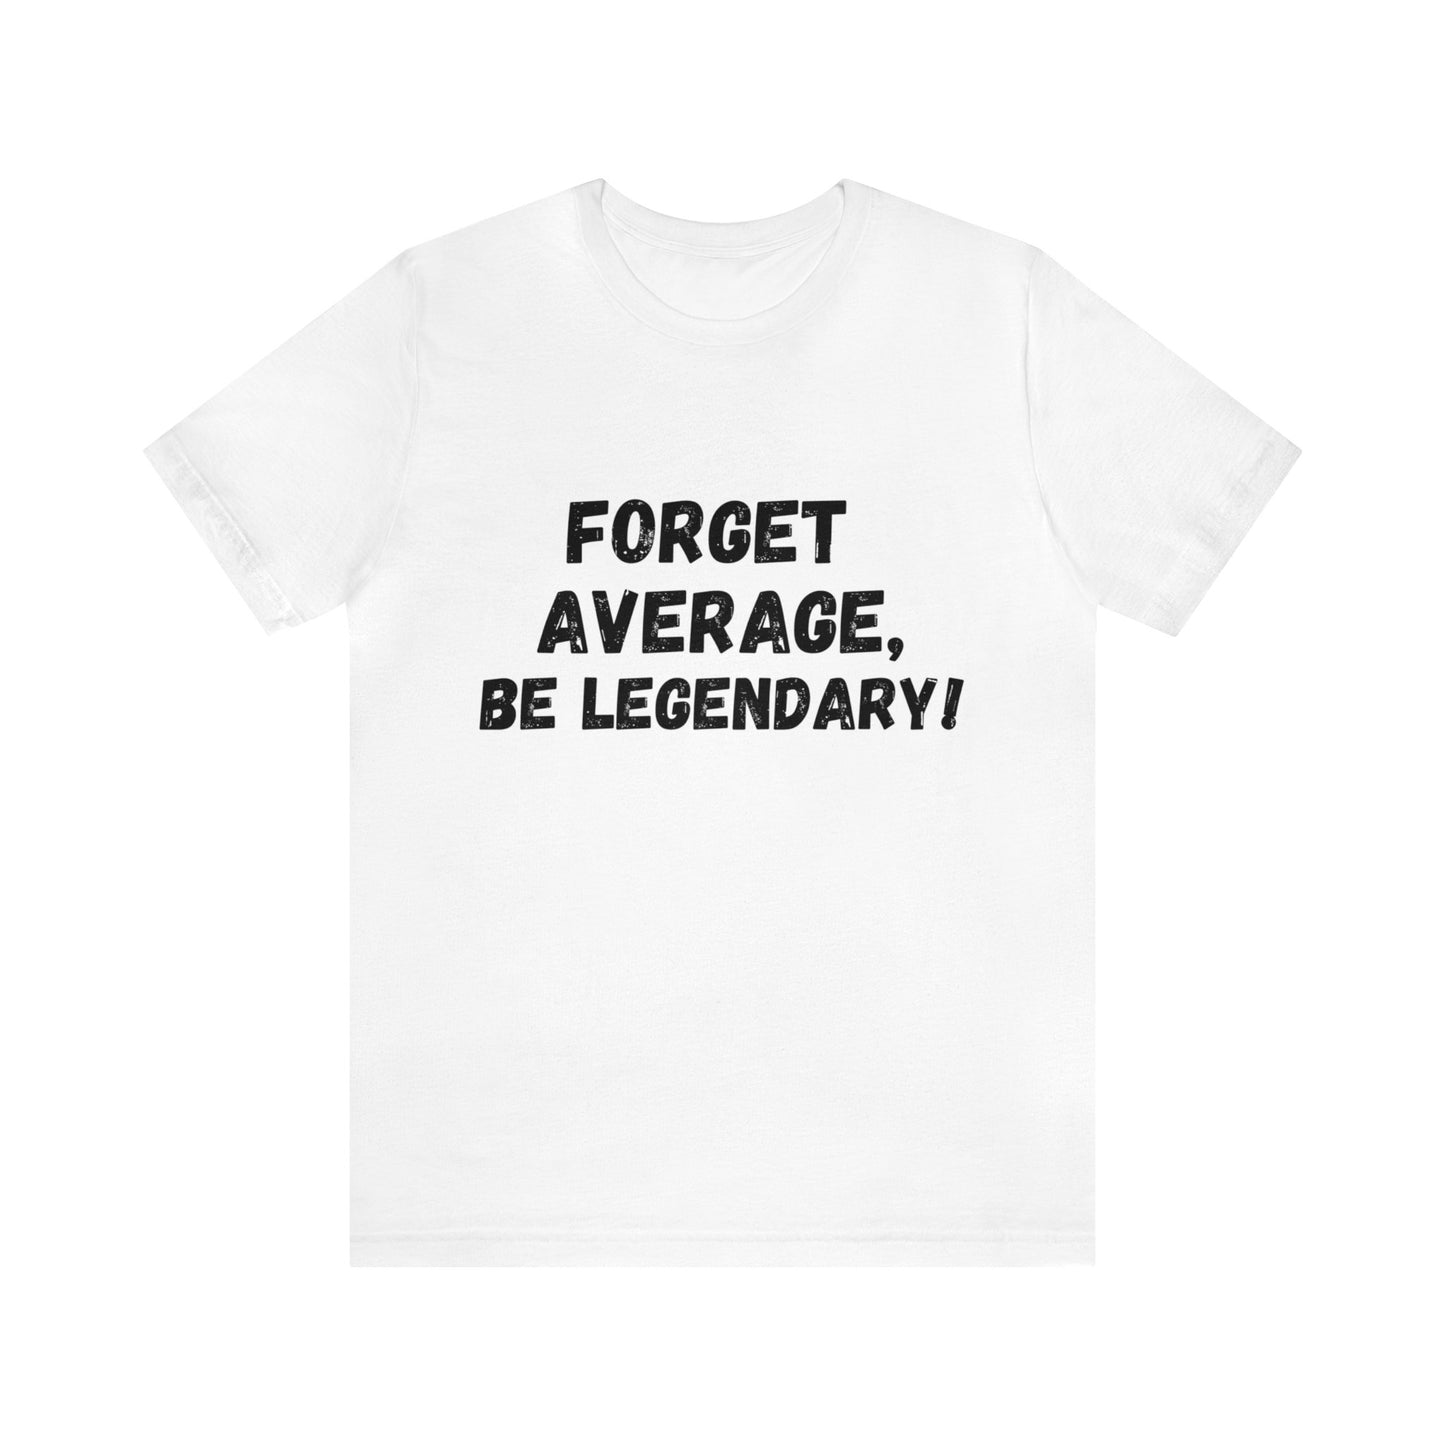 Forget Average, Be Legendary - Unisex T-Shirt